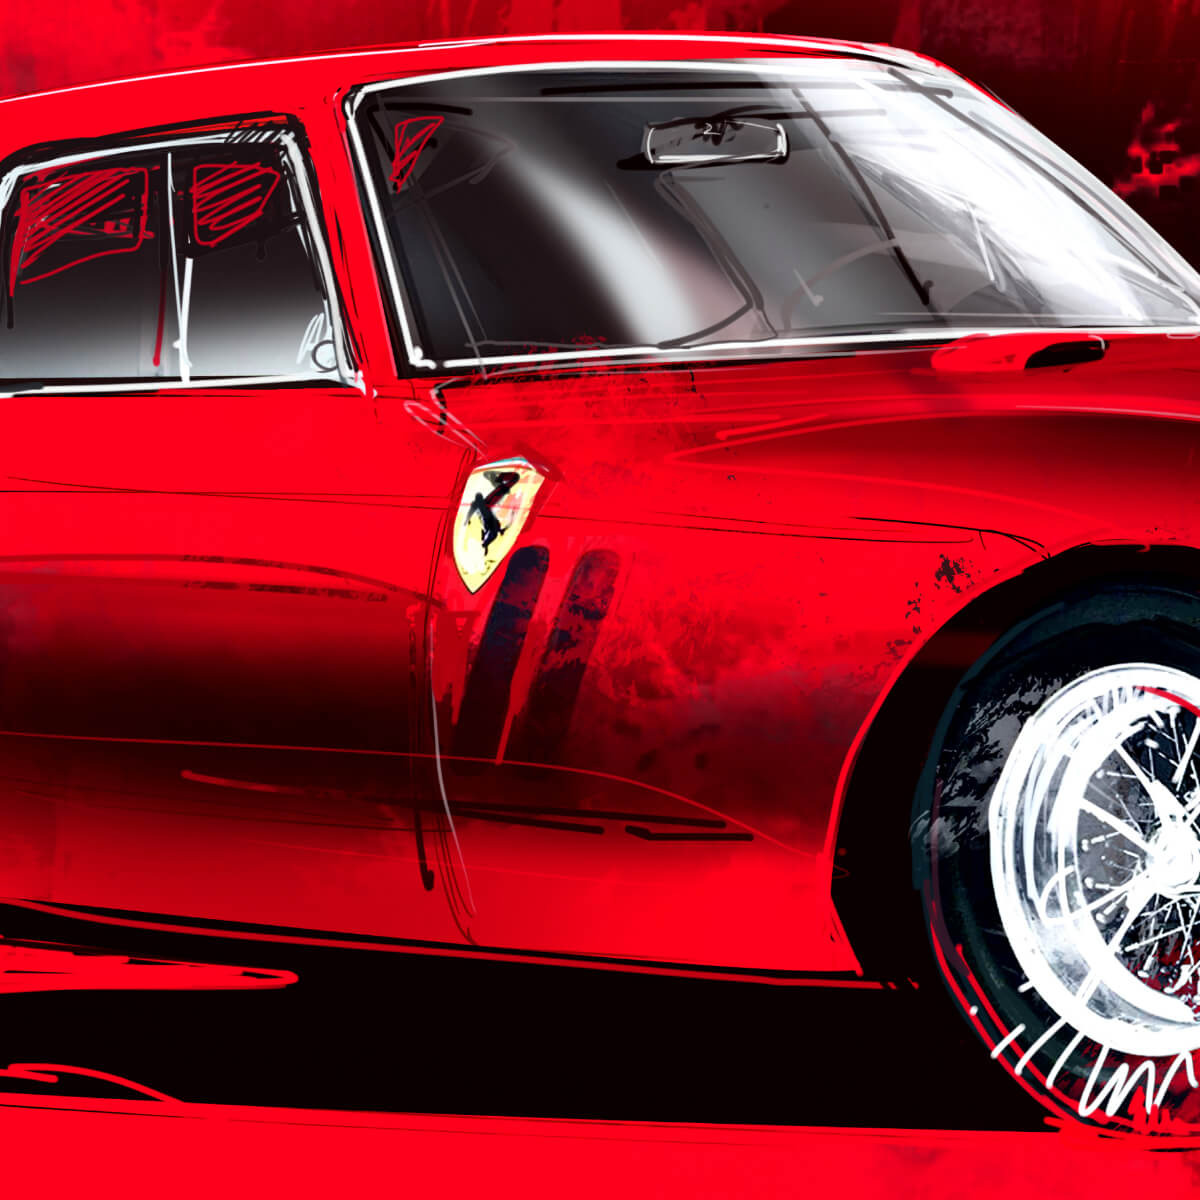 Ferrari 250 GTO "Rosso"